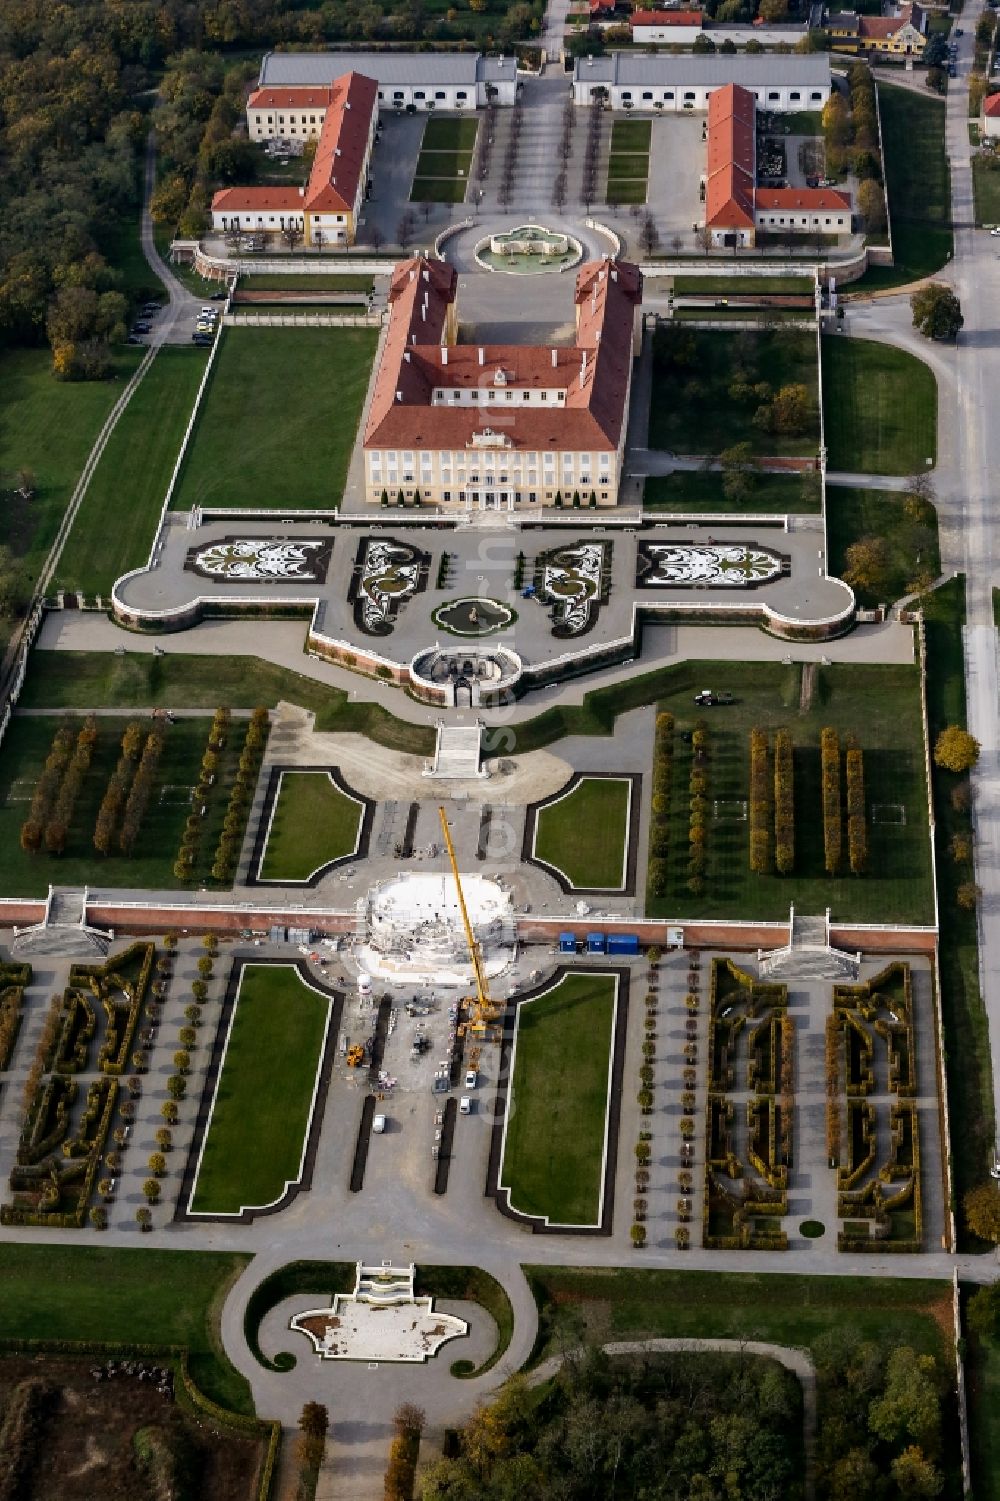 Aerial photograph Schloßhof - Palace of Schloss Schoenbrunn Kultur- and Betriebsges.m.b.H. in Schlosshof in Lower Austria, Austria